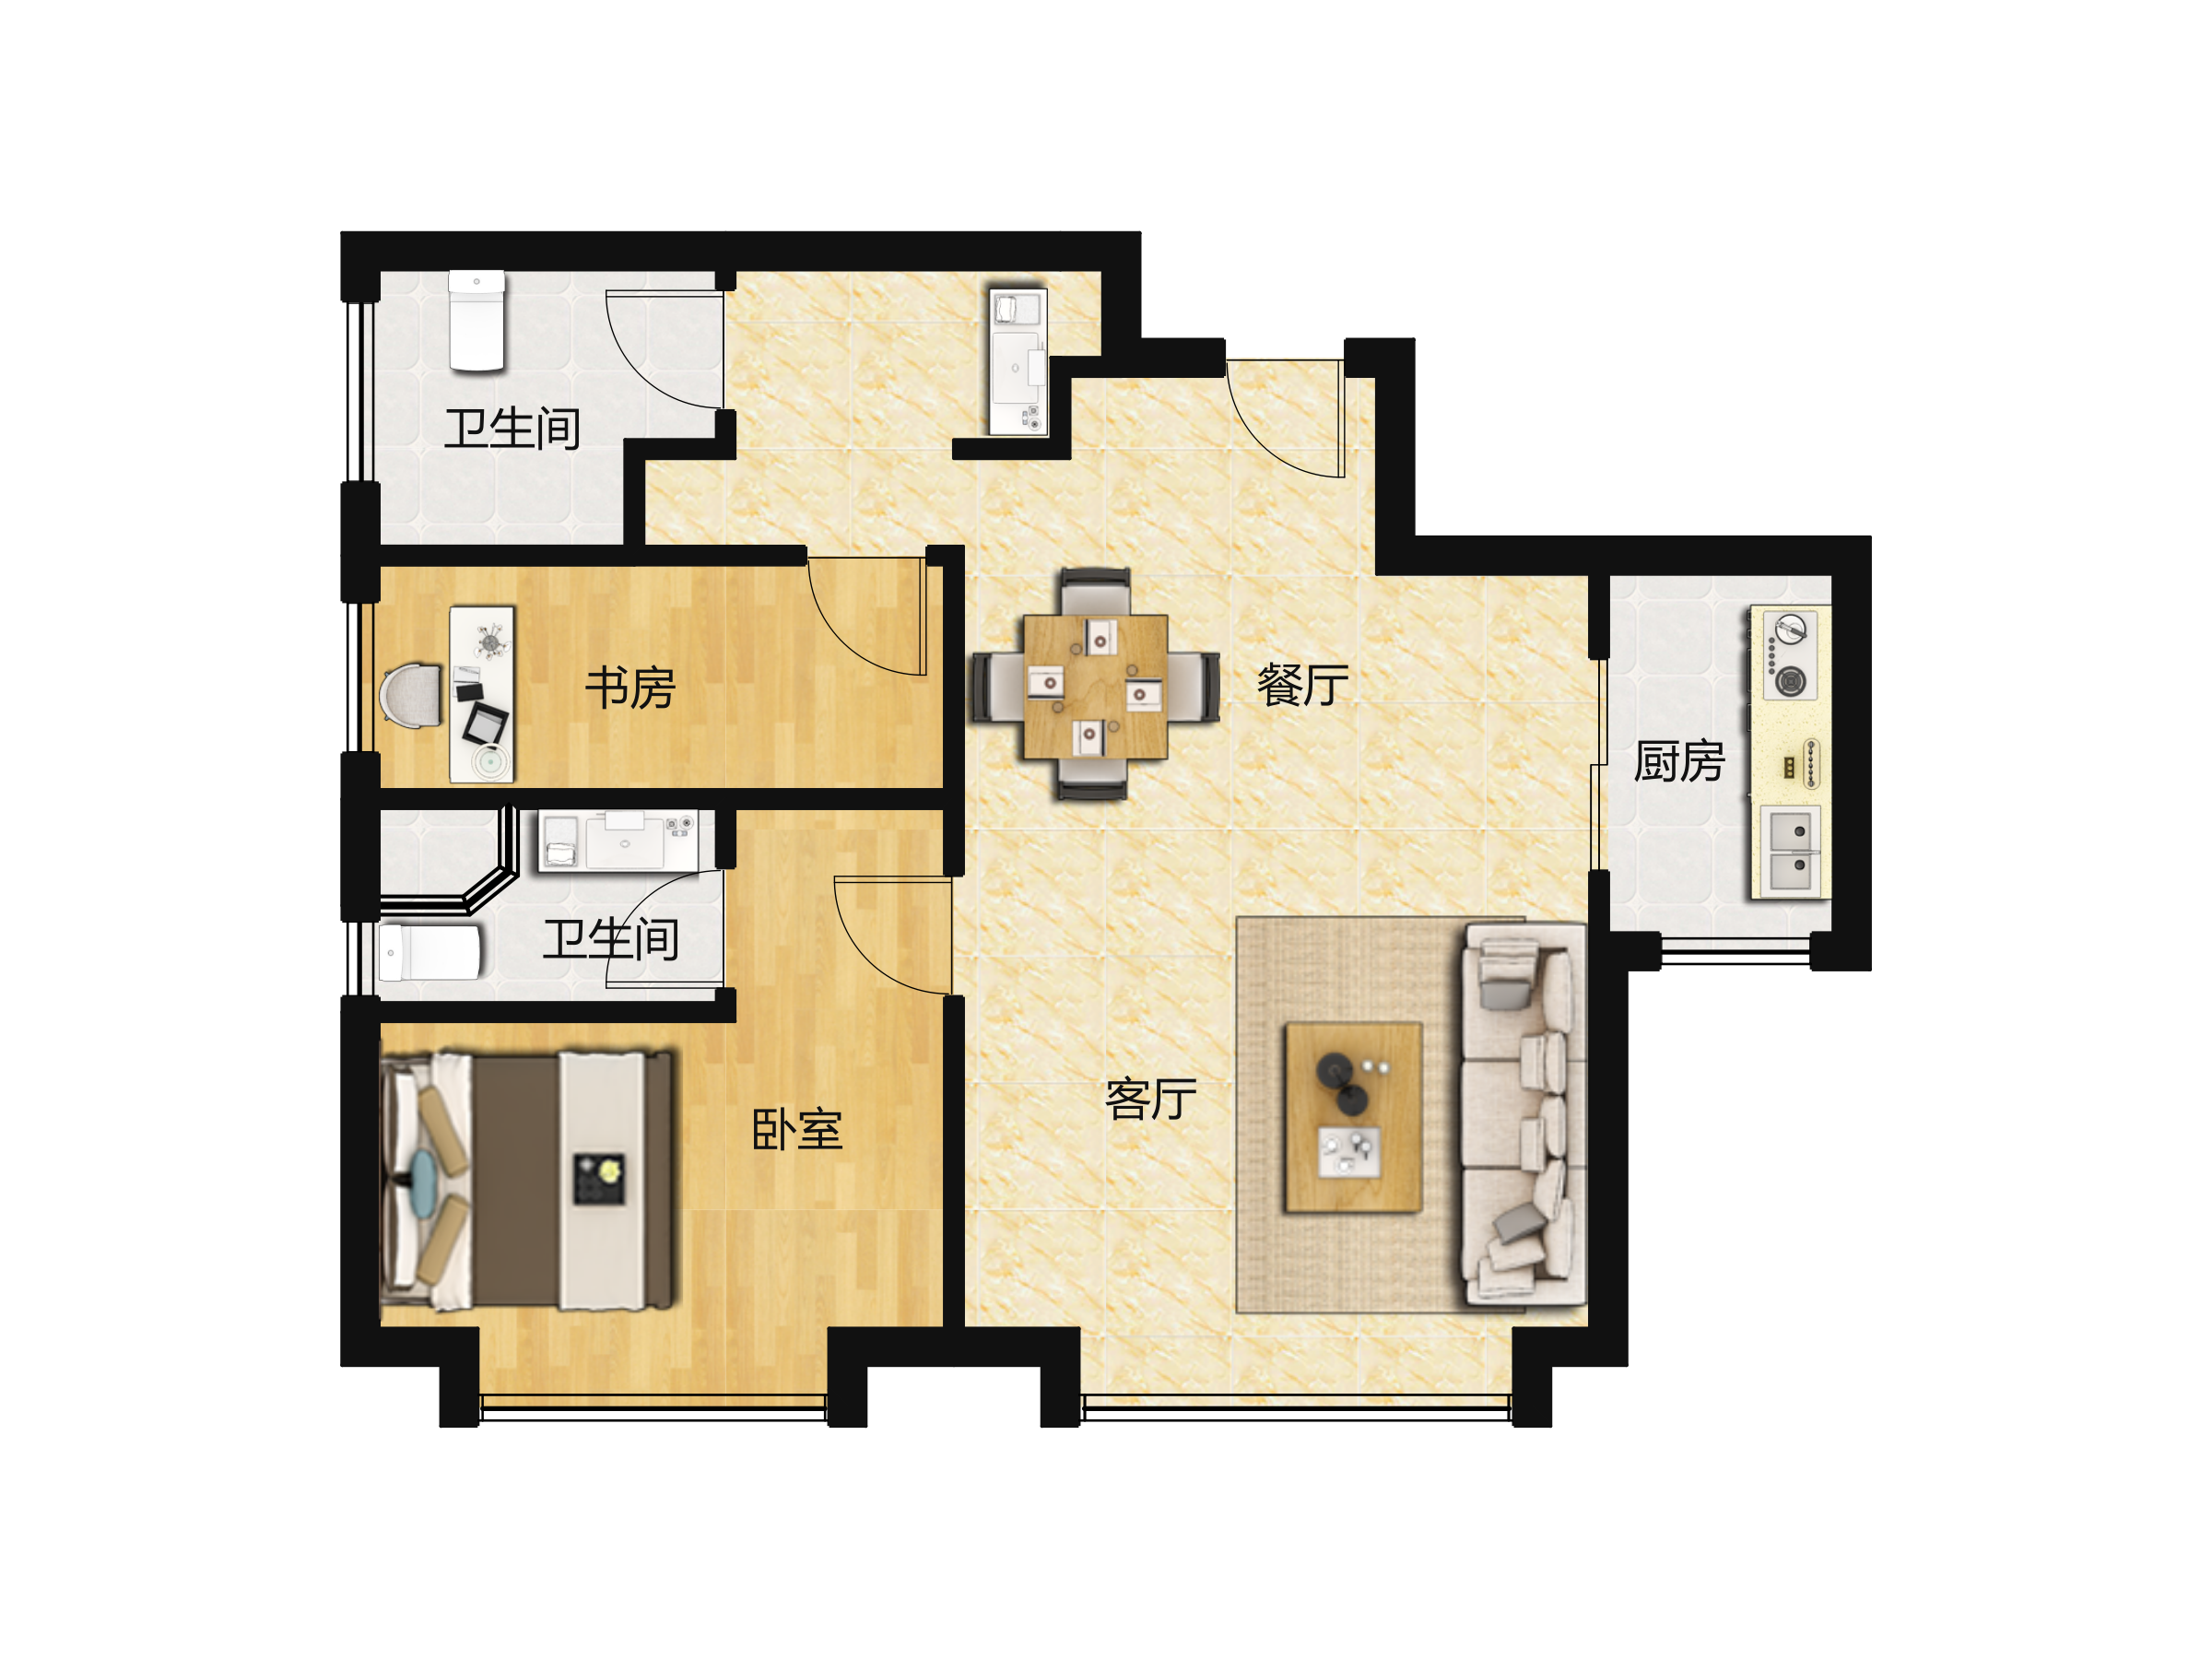 天津市和平区 .3室2厅2卫 80m²-v2户型图 - 小区户型图 -躺平设计家